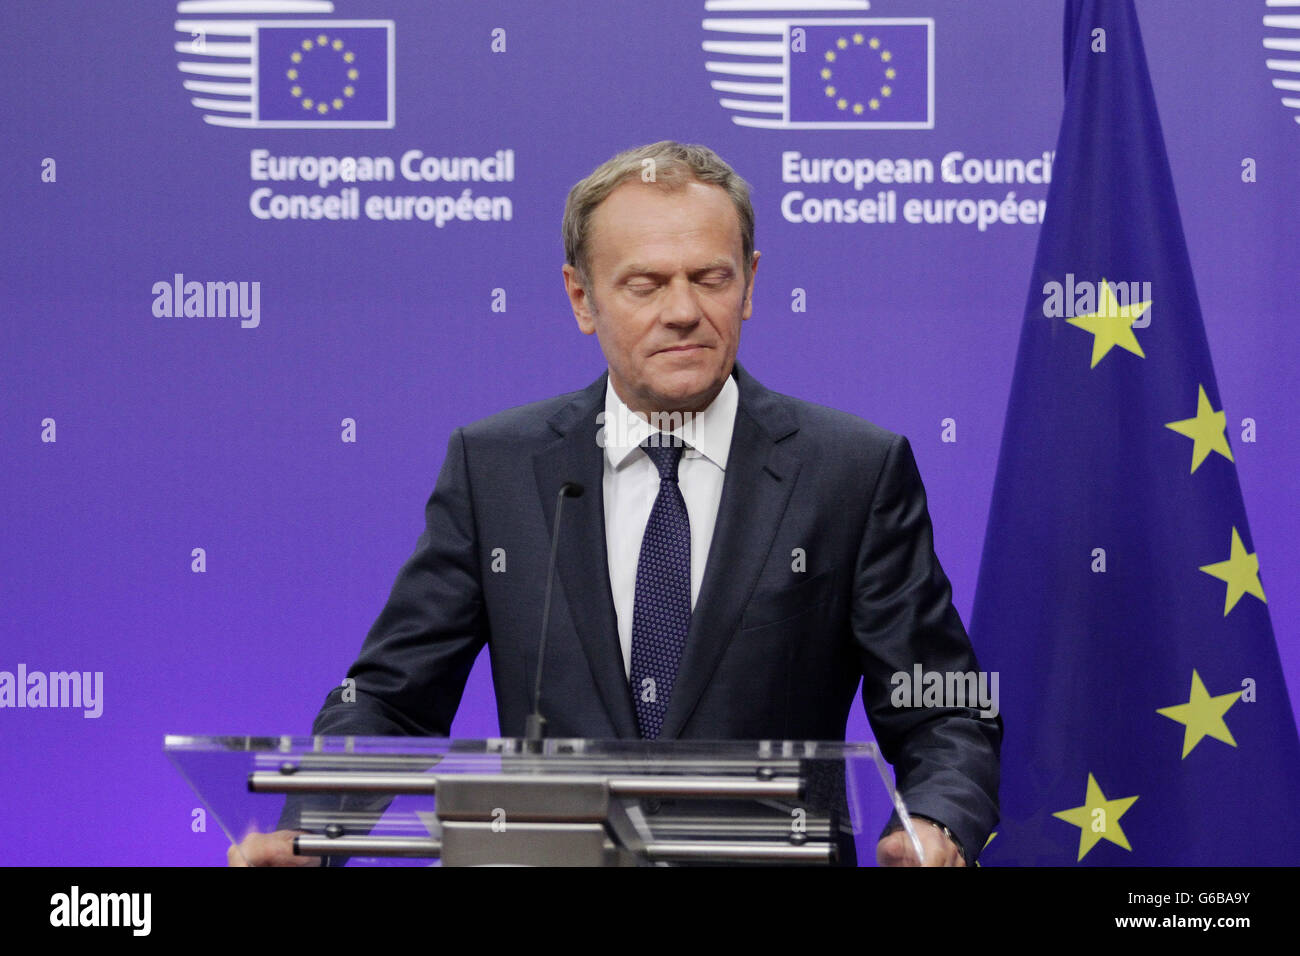 Bruxelles, Belgio. Il 24 giugno 2016. Conferenza stampa del Presidente della Commissione europea Donald Tusk, dopo i risultati di Brexit,Bruxelles,Belgio Credito: Leonardo Hugo Cavallo/Alamy Live News Foto Stock